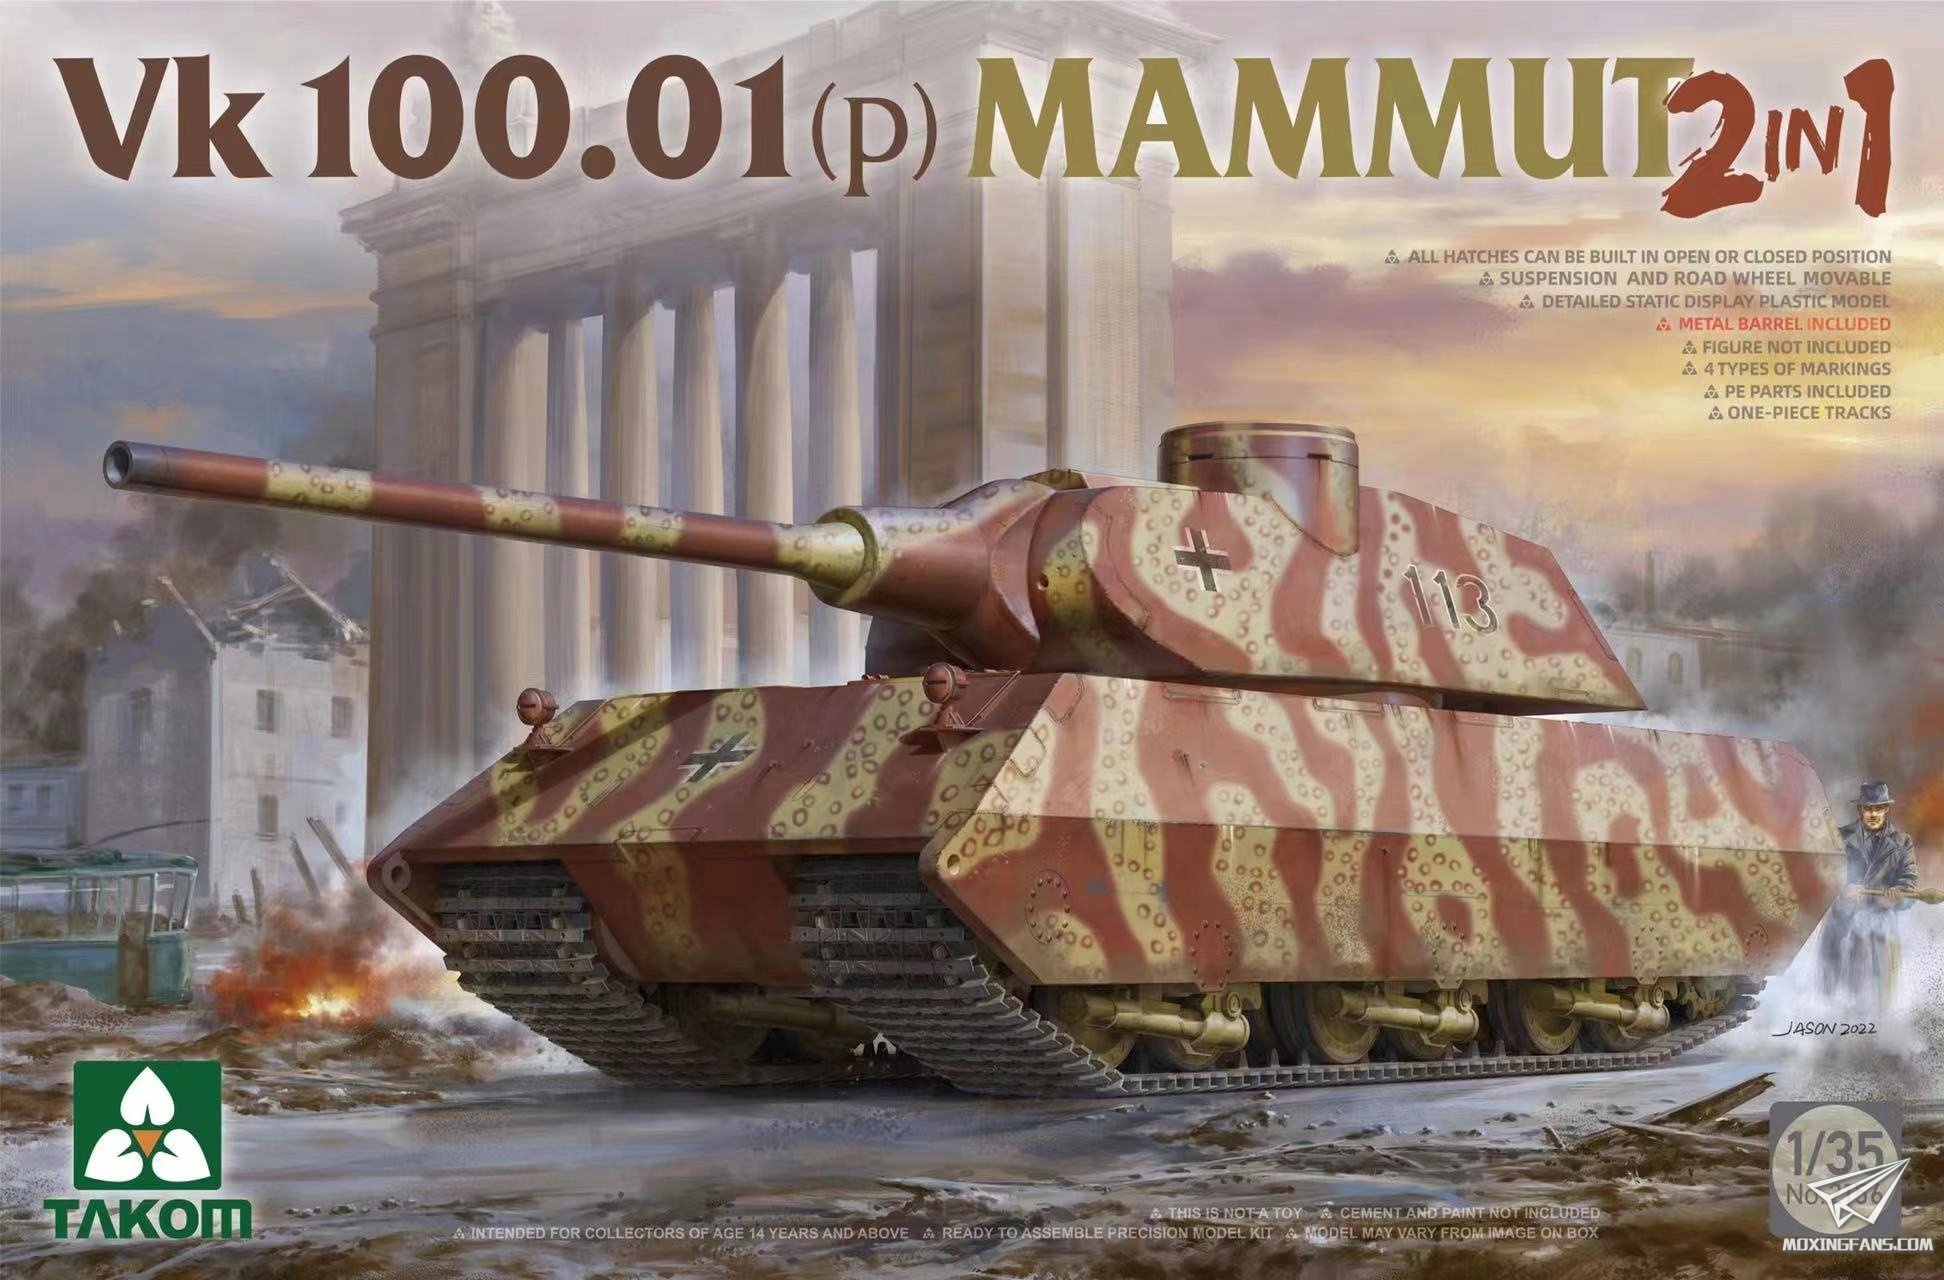 2156  техника и вооружение  VK 100.01 (p) Mammut  (1:35)